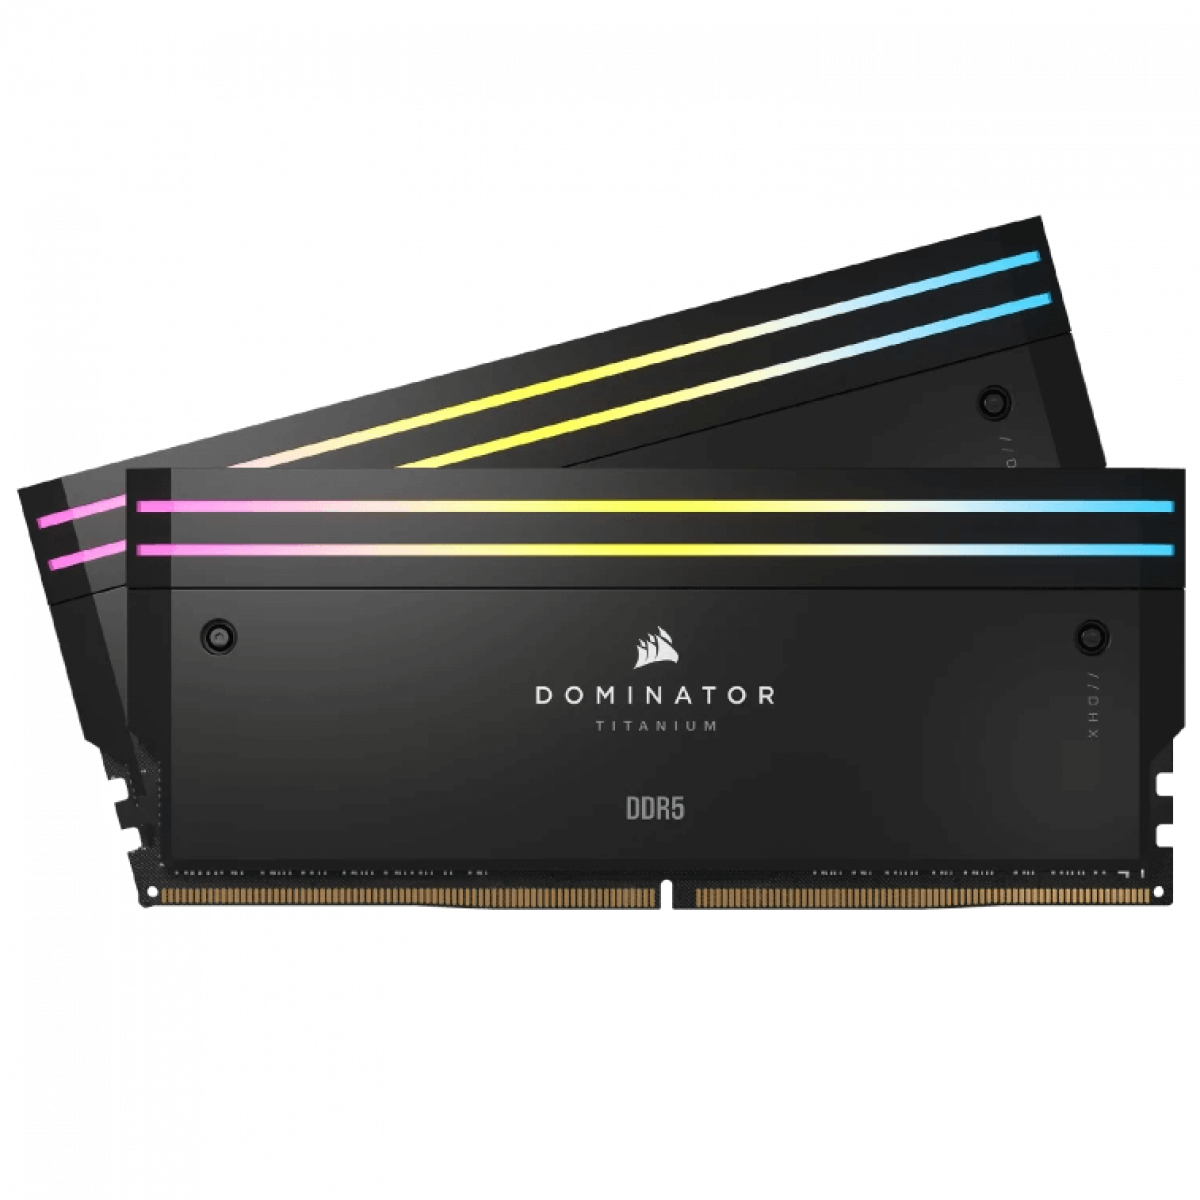 CORSAIR DOMINATOR TITANIUM Black DDR5, 6000MT/s 32GB 2x16GB DIMM, XMP 3.0, RGB LED, 1.4V